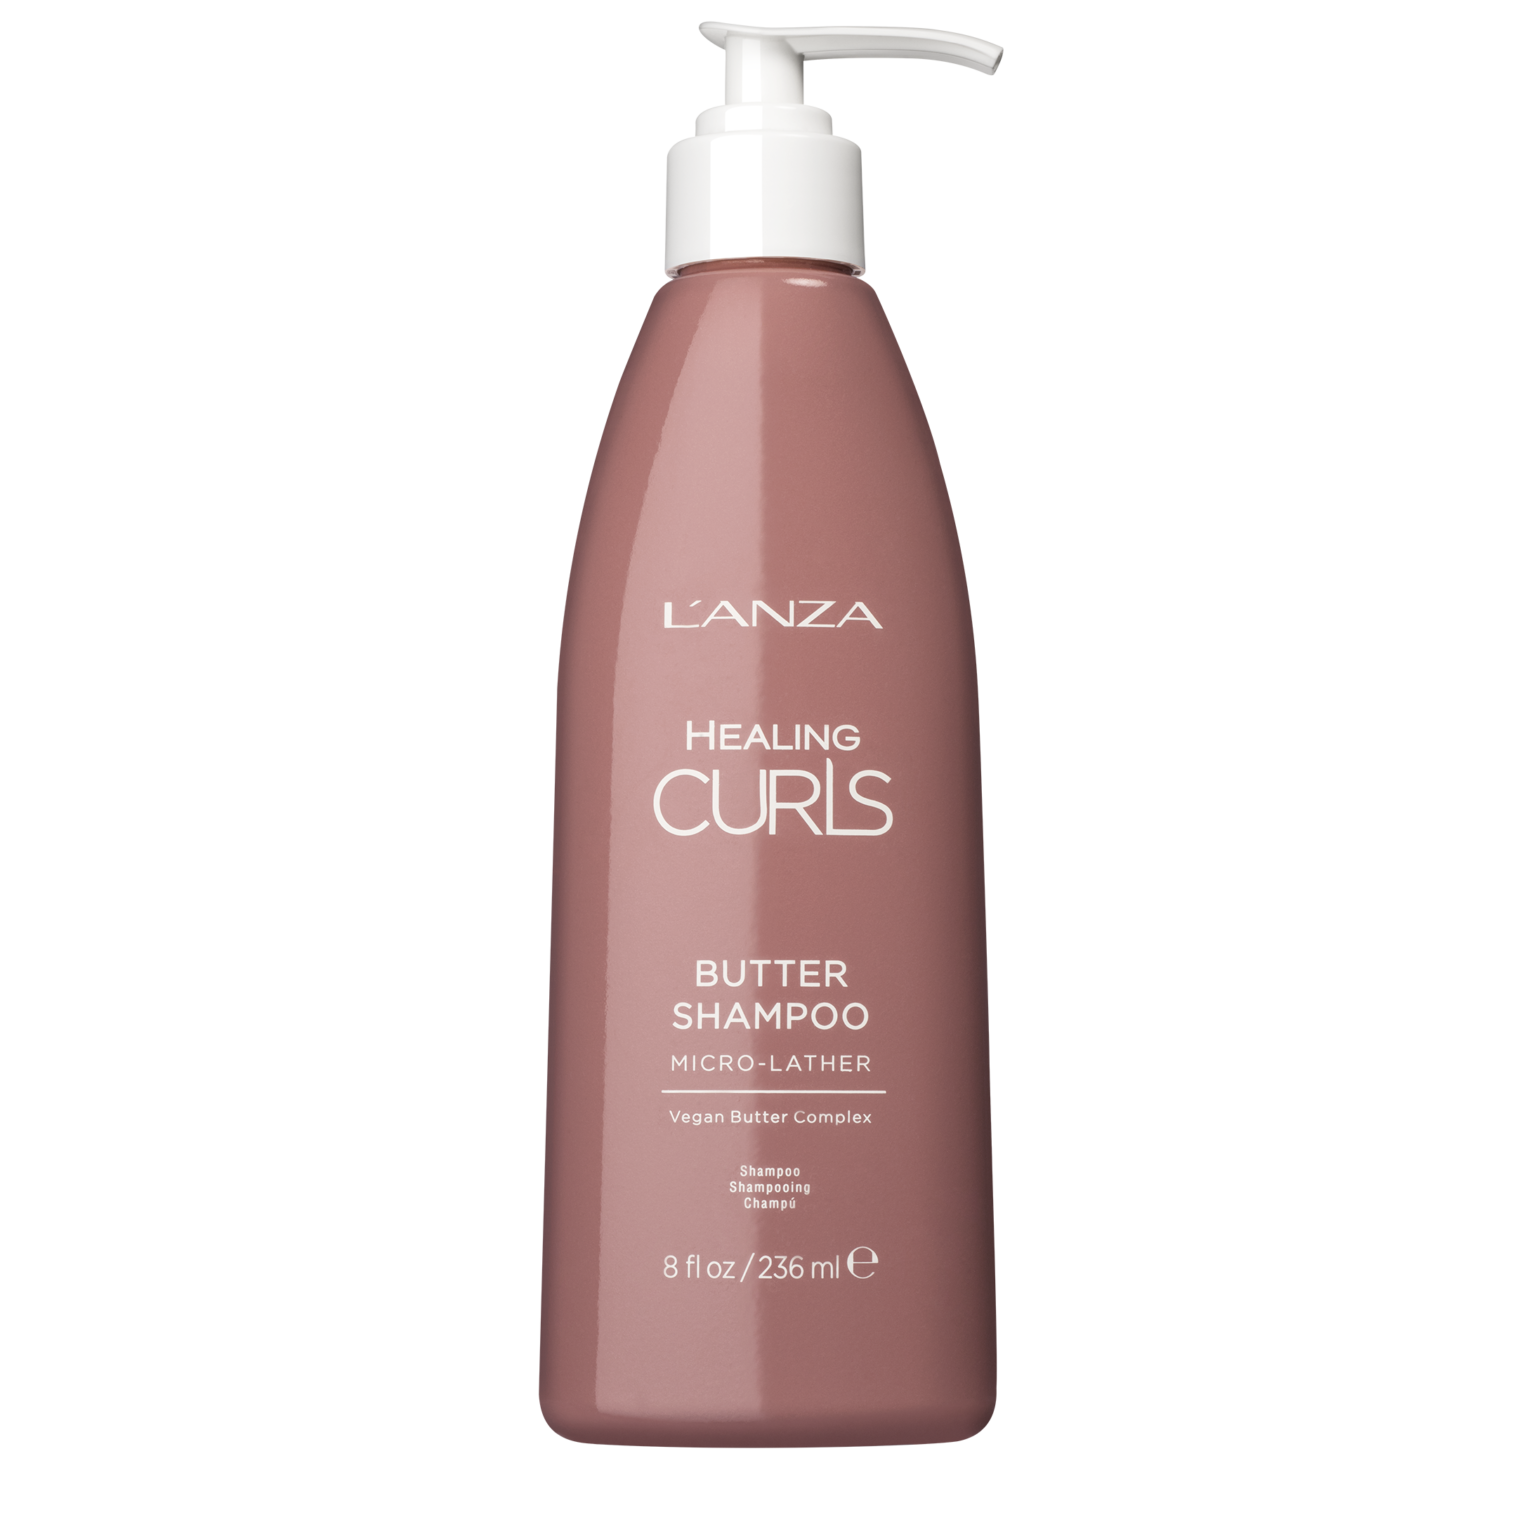 L’ANZA Healing Curls Butter Shampoo